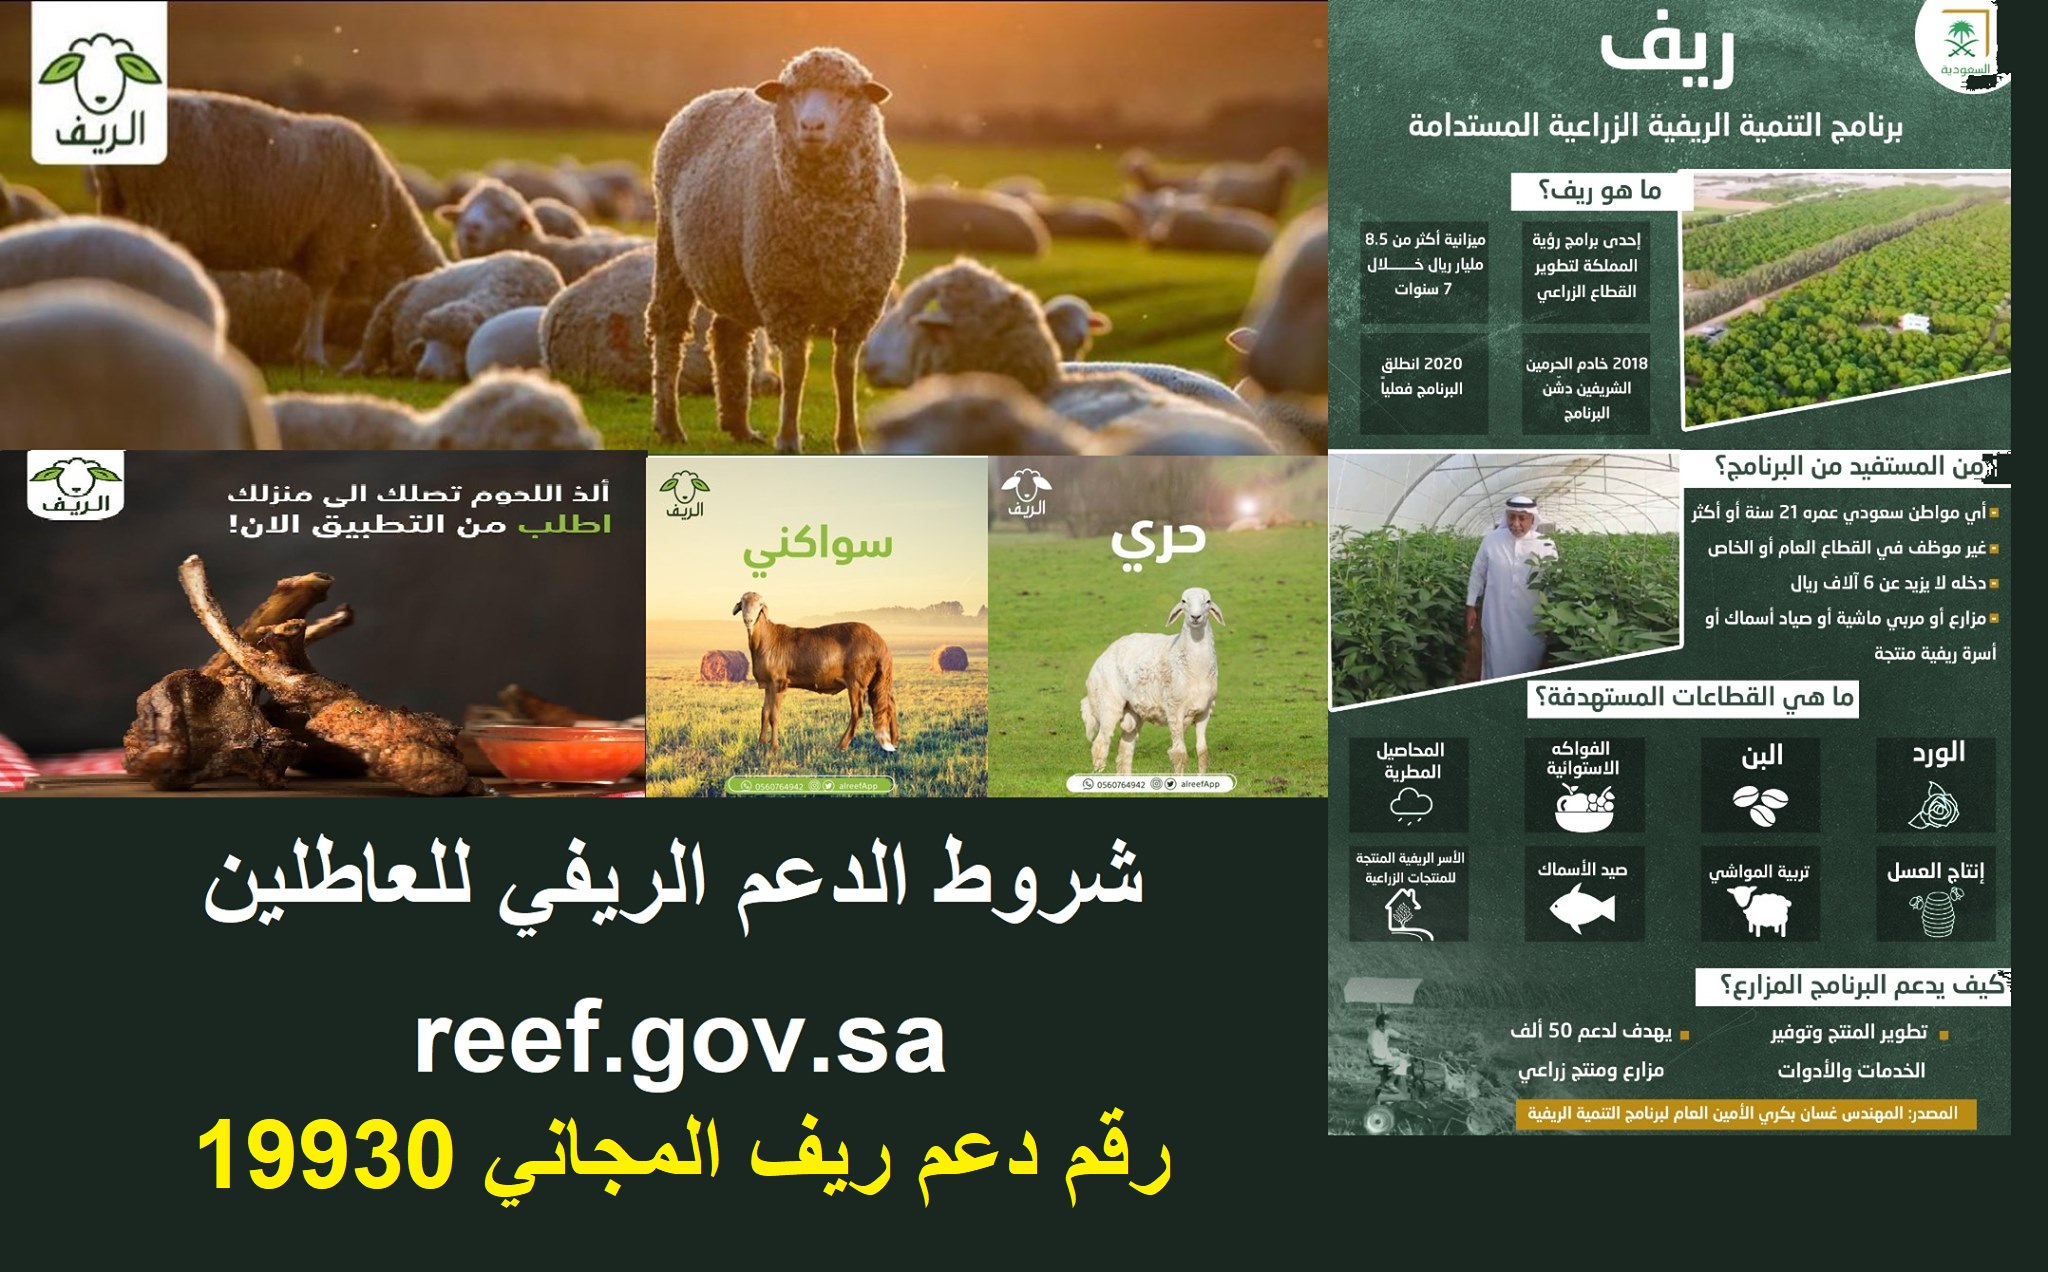 reef.gov.sa منصة ريف الحكومية تسجيل دخول sdb بوابة أنعام لمربي المواشي mewa.gov.sa